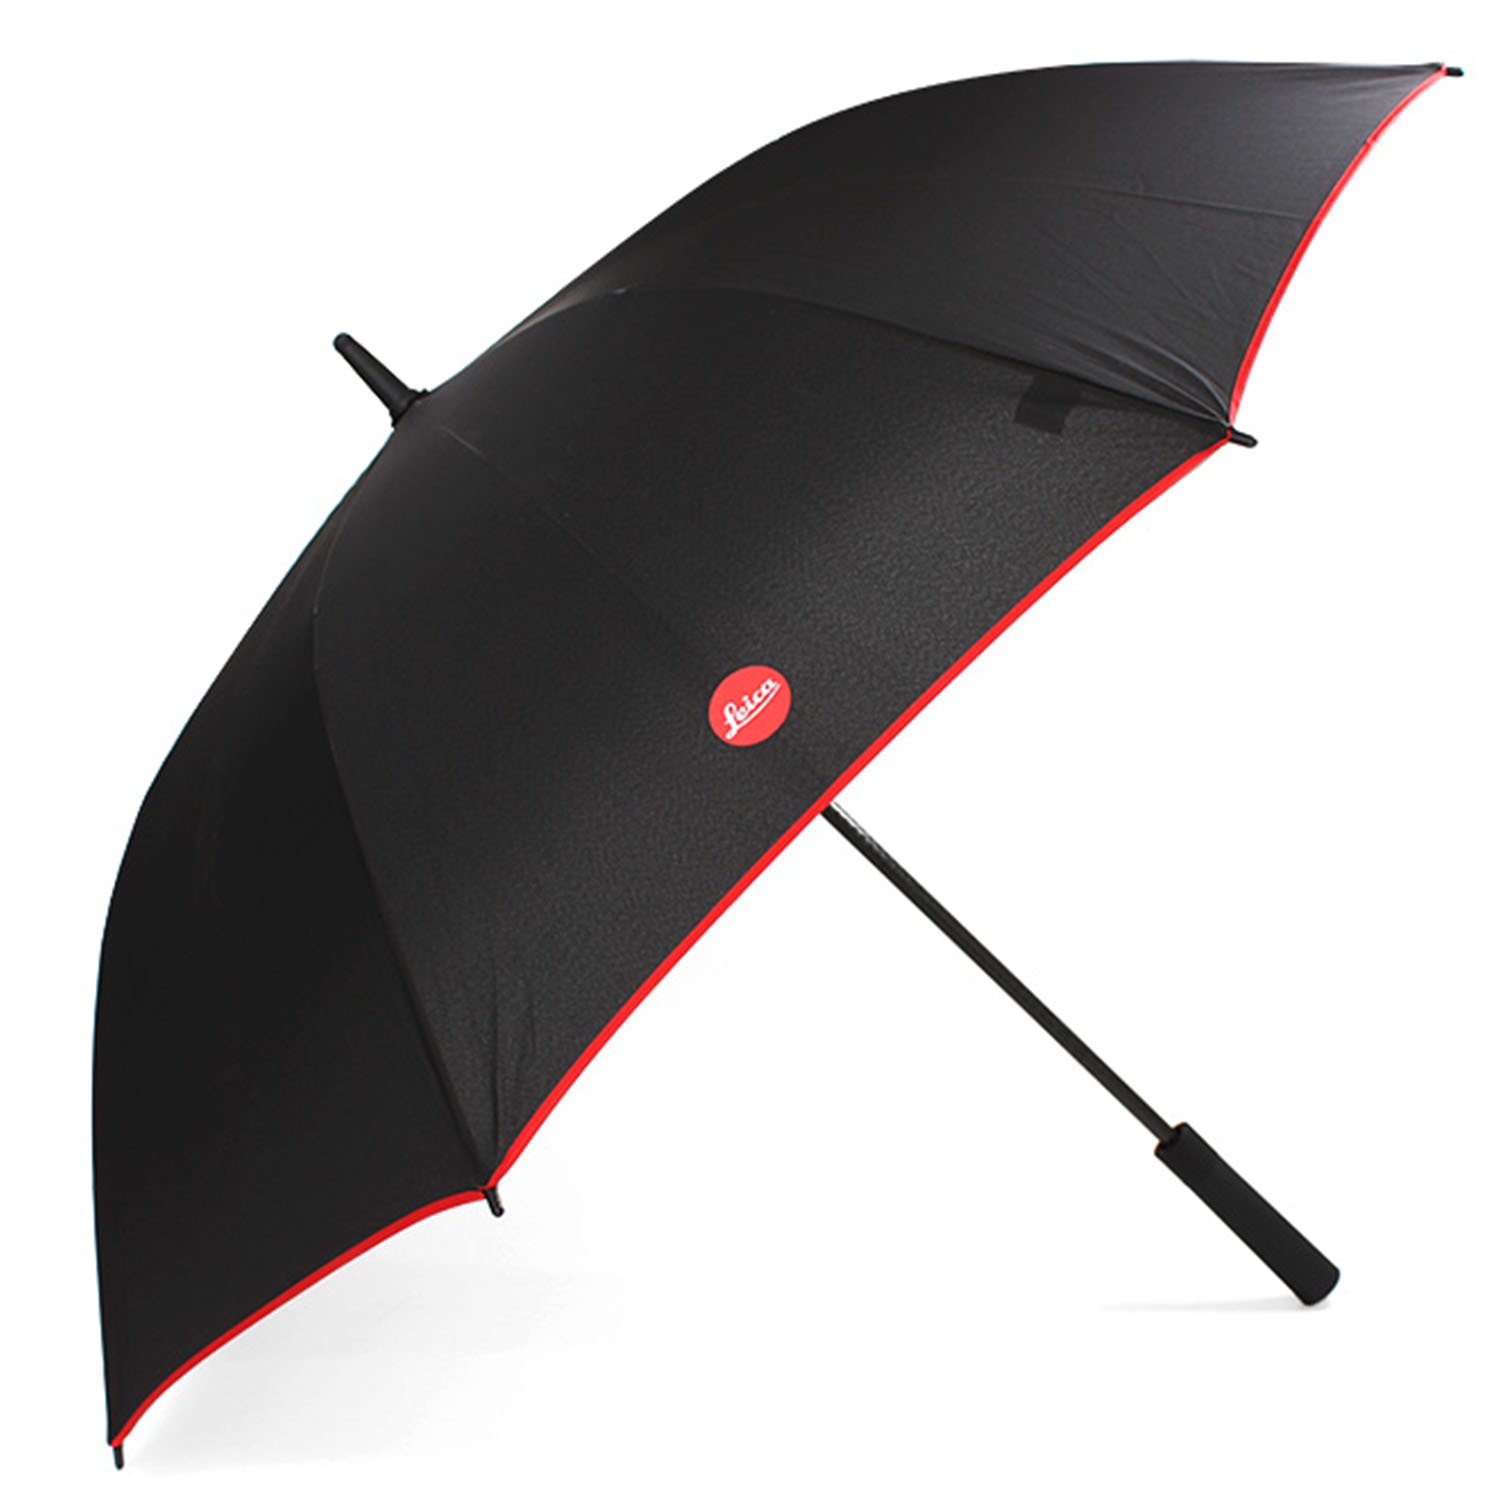 Leica Umbrella Main Image